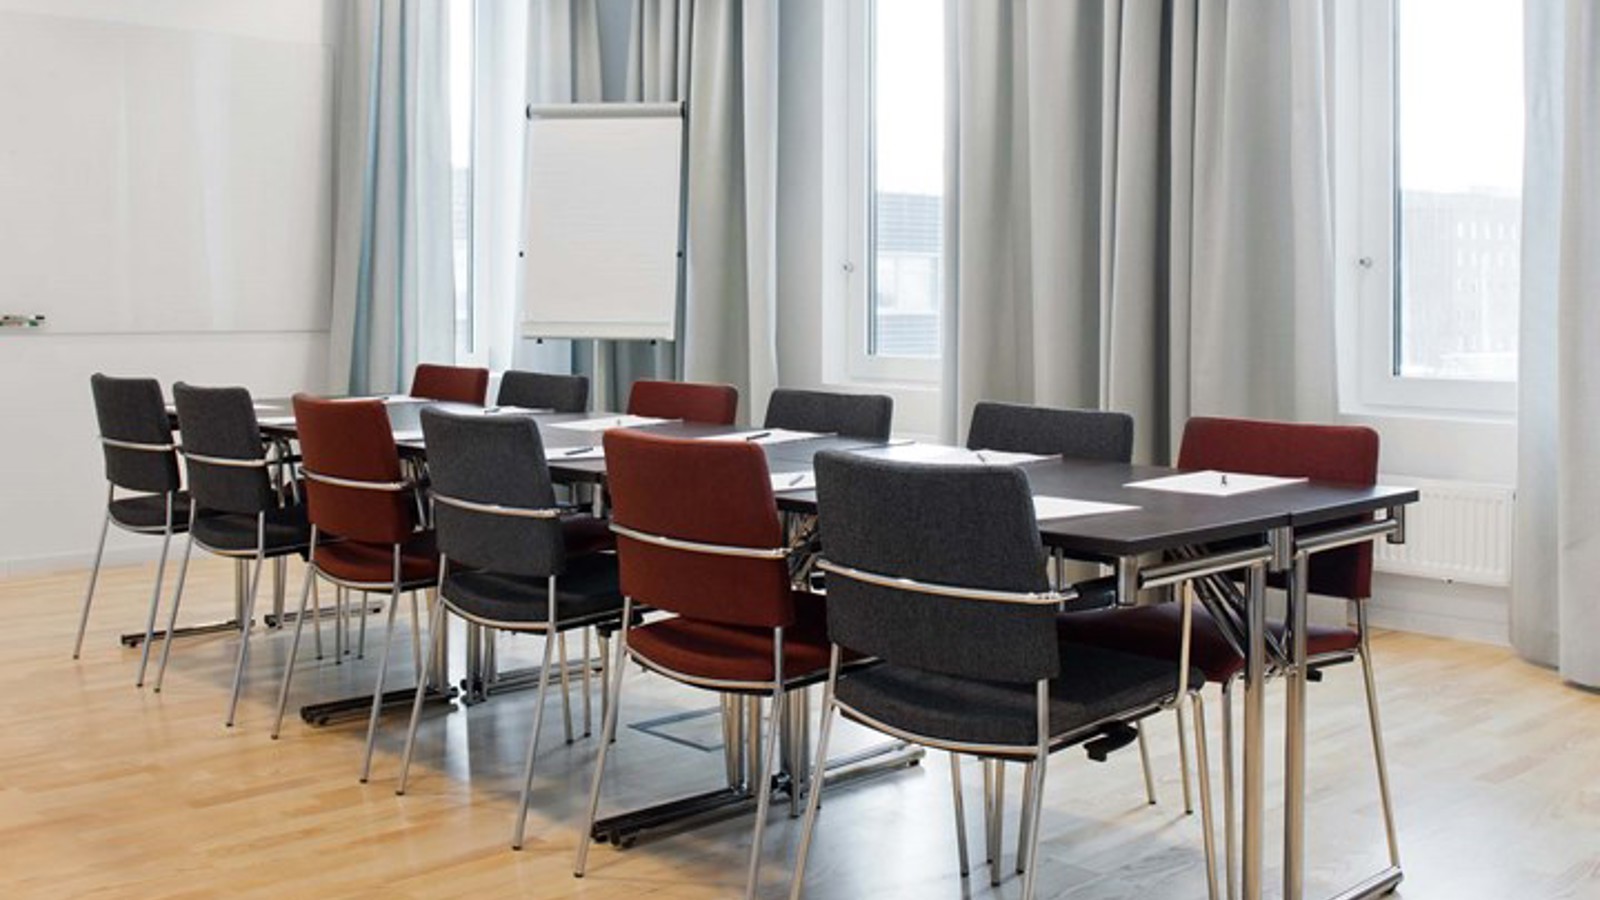 Konferensrum med styrelsesittning, stora fönster, grå gardiner och mörka stolar